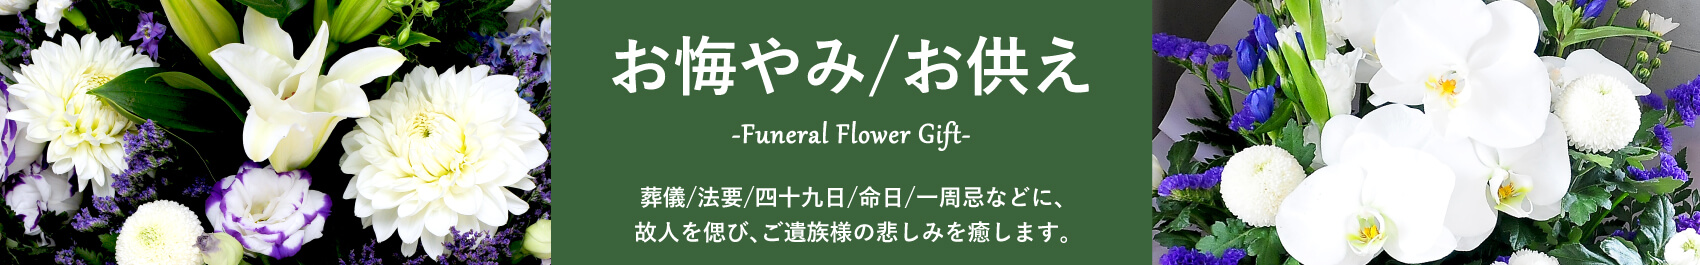 お悔やみ・お供えの花ギフト・プレゼント お悔やみ・お供えの花